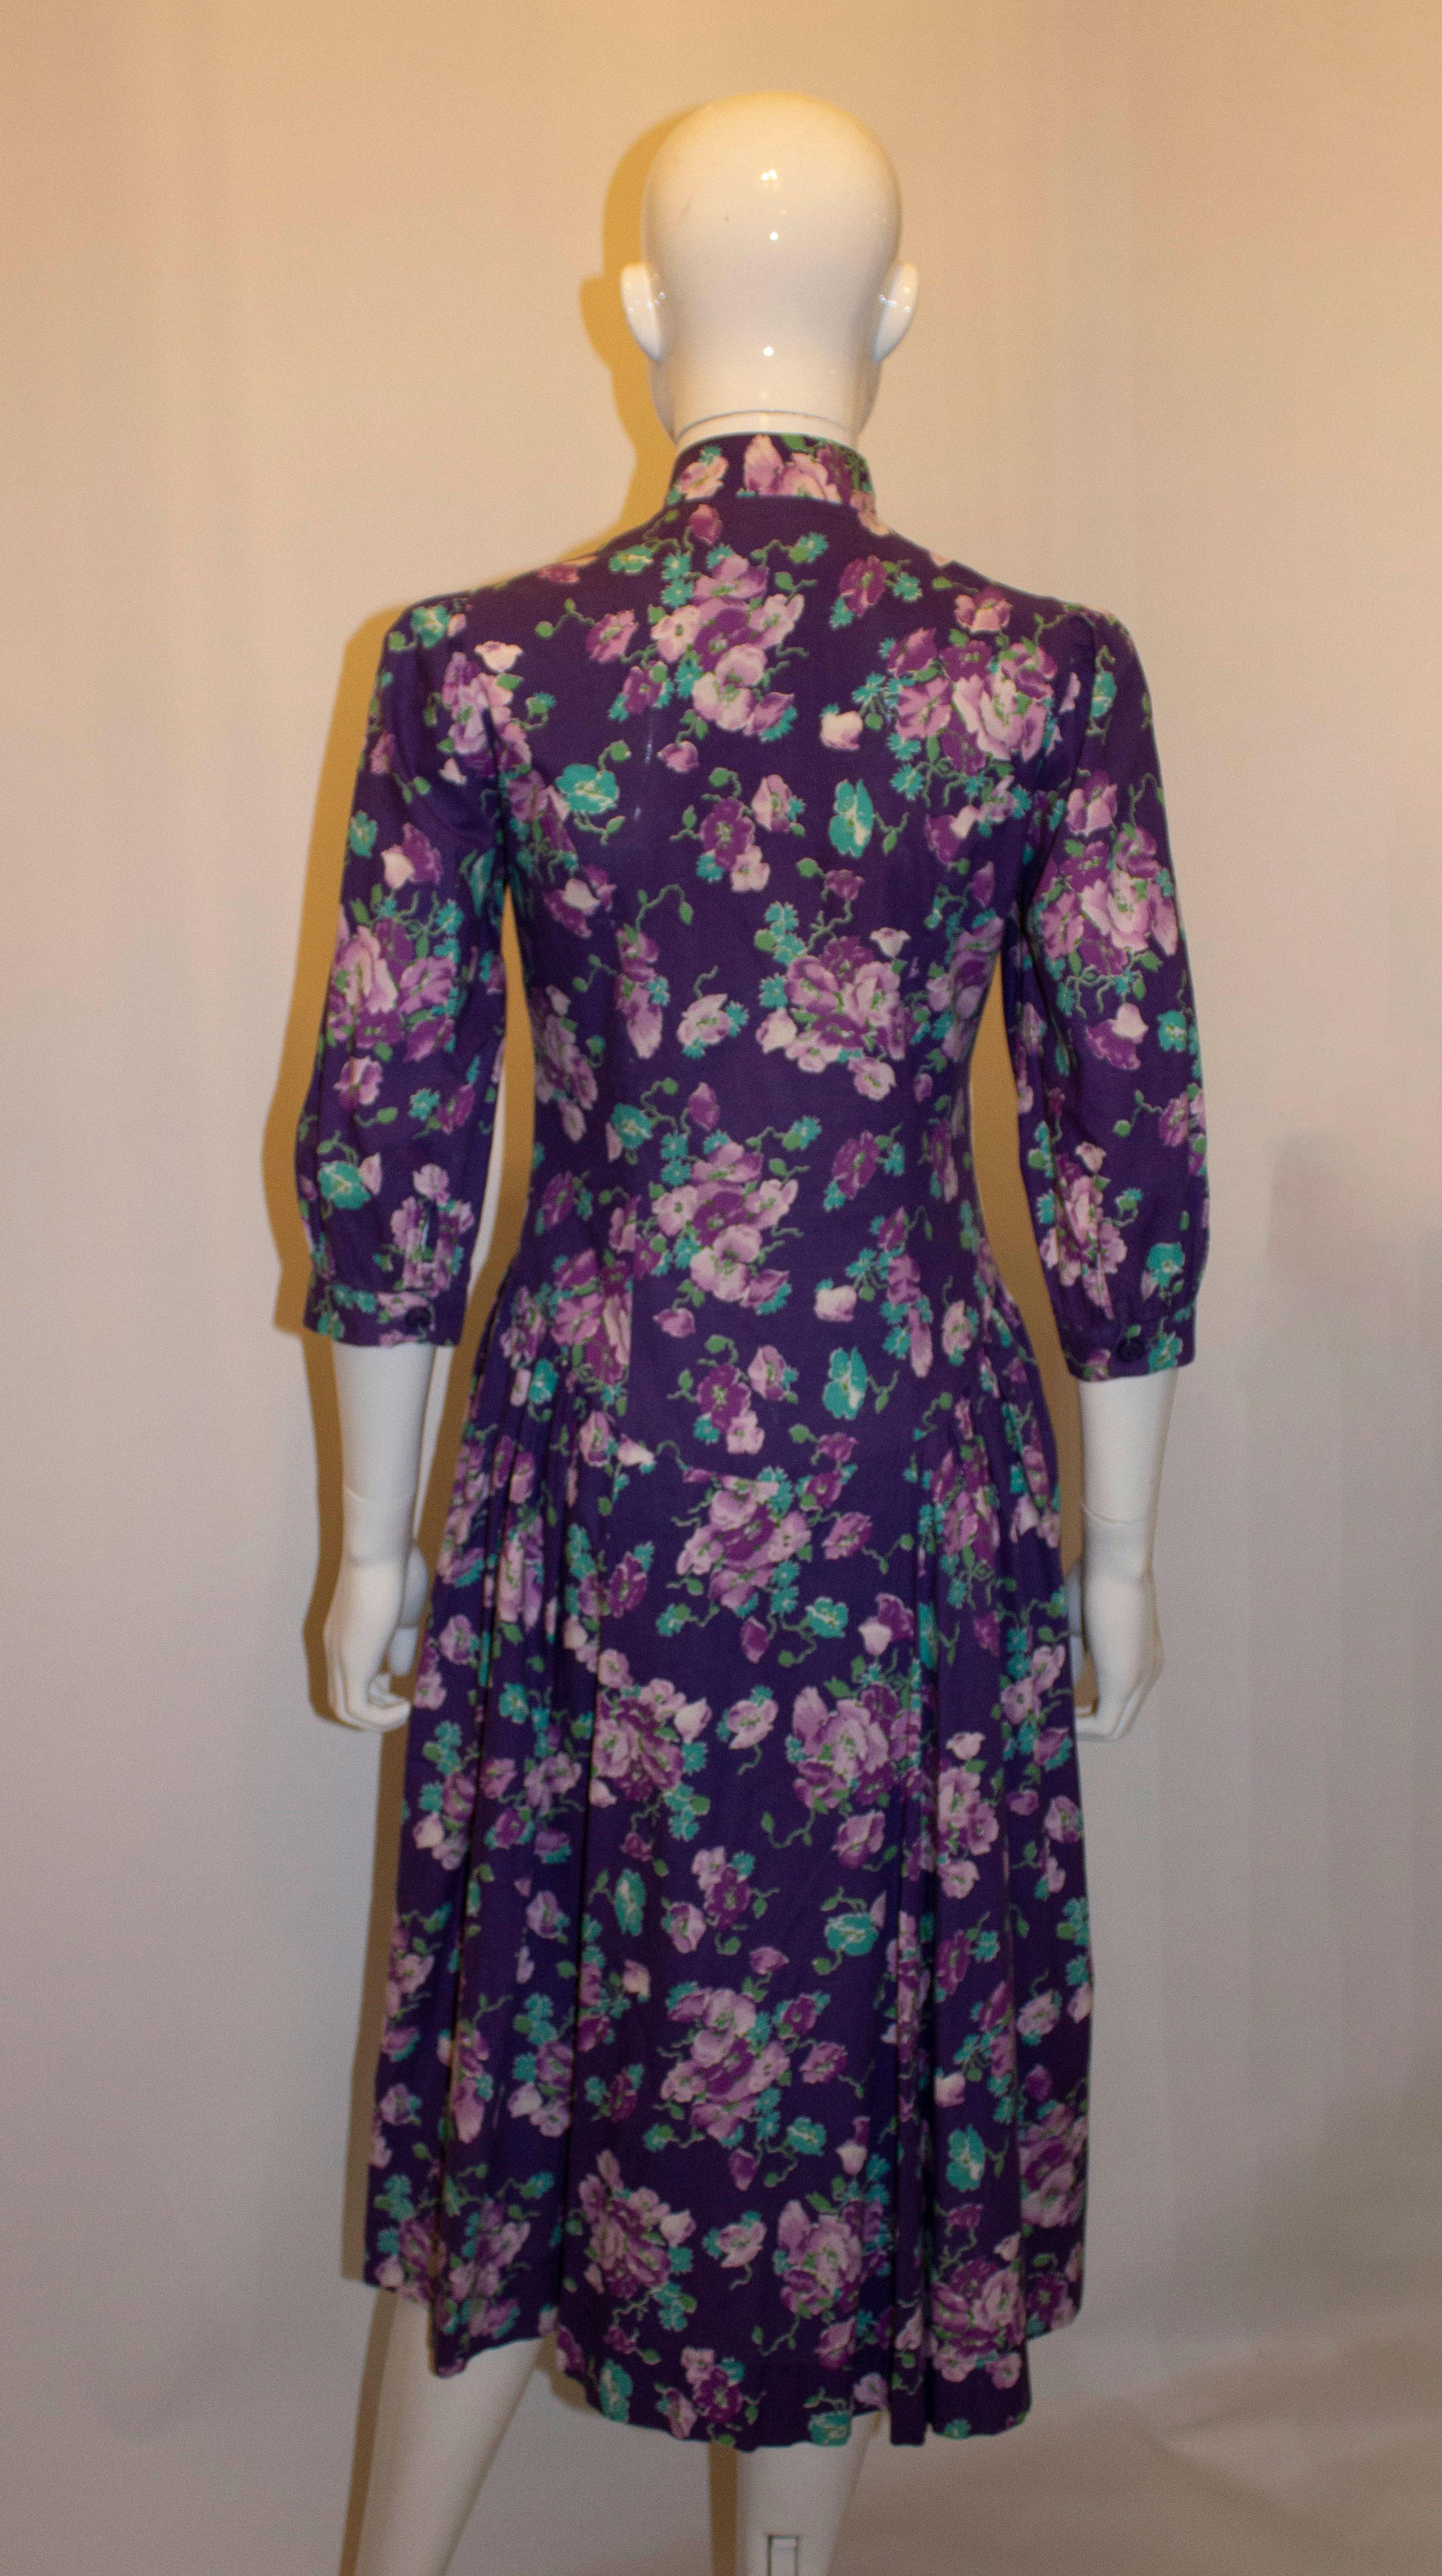 Ein hübsches geblümtes Baumwollkleid im Vintage-Stil von Laura Ashley. Das Kleid hat einen violetten Hintergrund mit Blumendruck, steht  stehkragen und Knopfleiste.  Es hat ellenbogenlange Ärmel mit  manschette, eine Tasche auf jeder Seite und